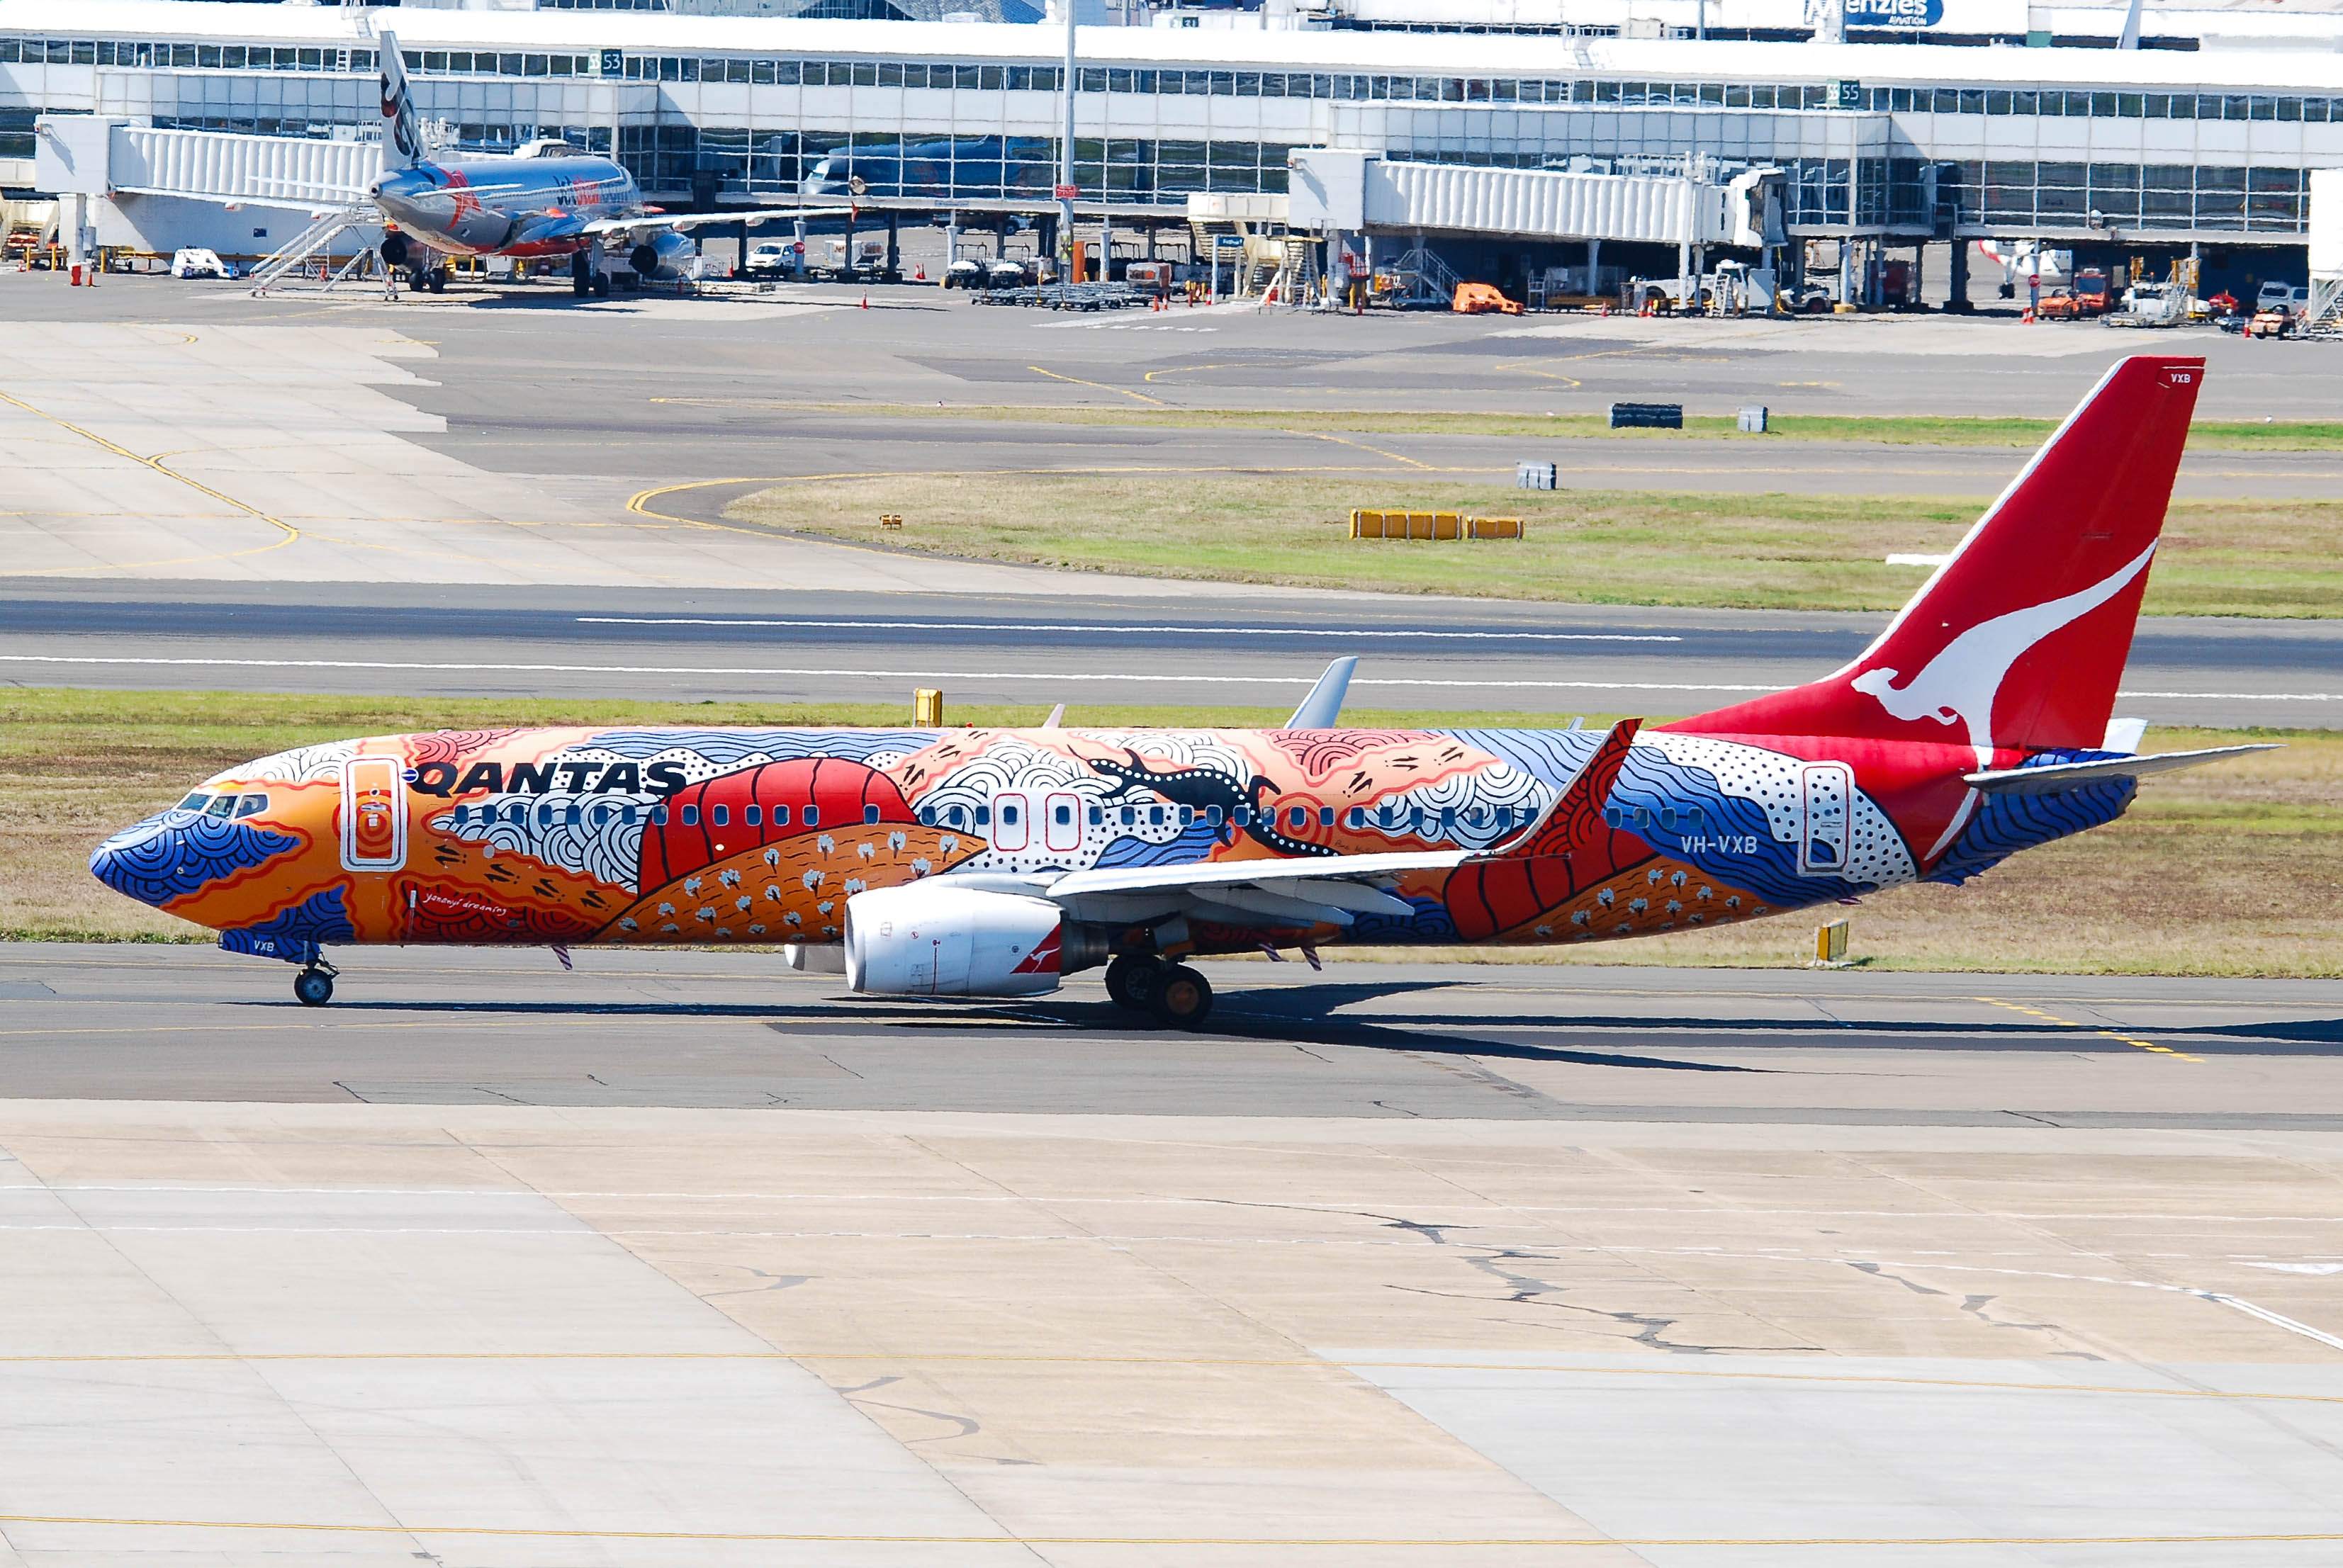 VH-VXB/VHVXB Qantas Boeing 737 NG Airframe Information - AVSpotters.com